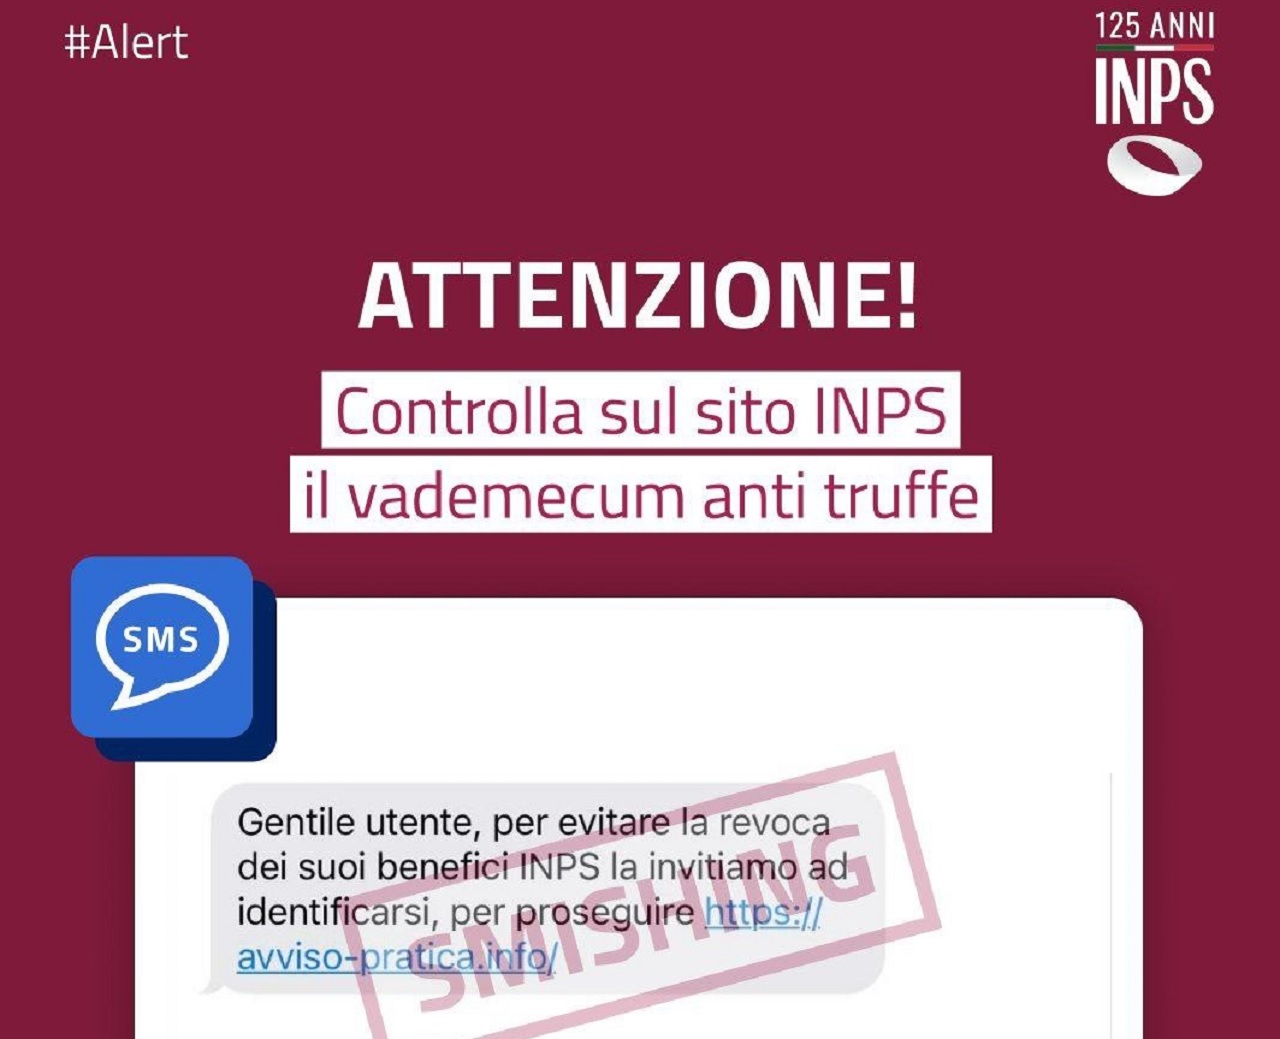 La truffa che fa tremare l’INPS e gli italiani, attenzione all’SMS trappola